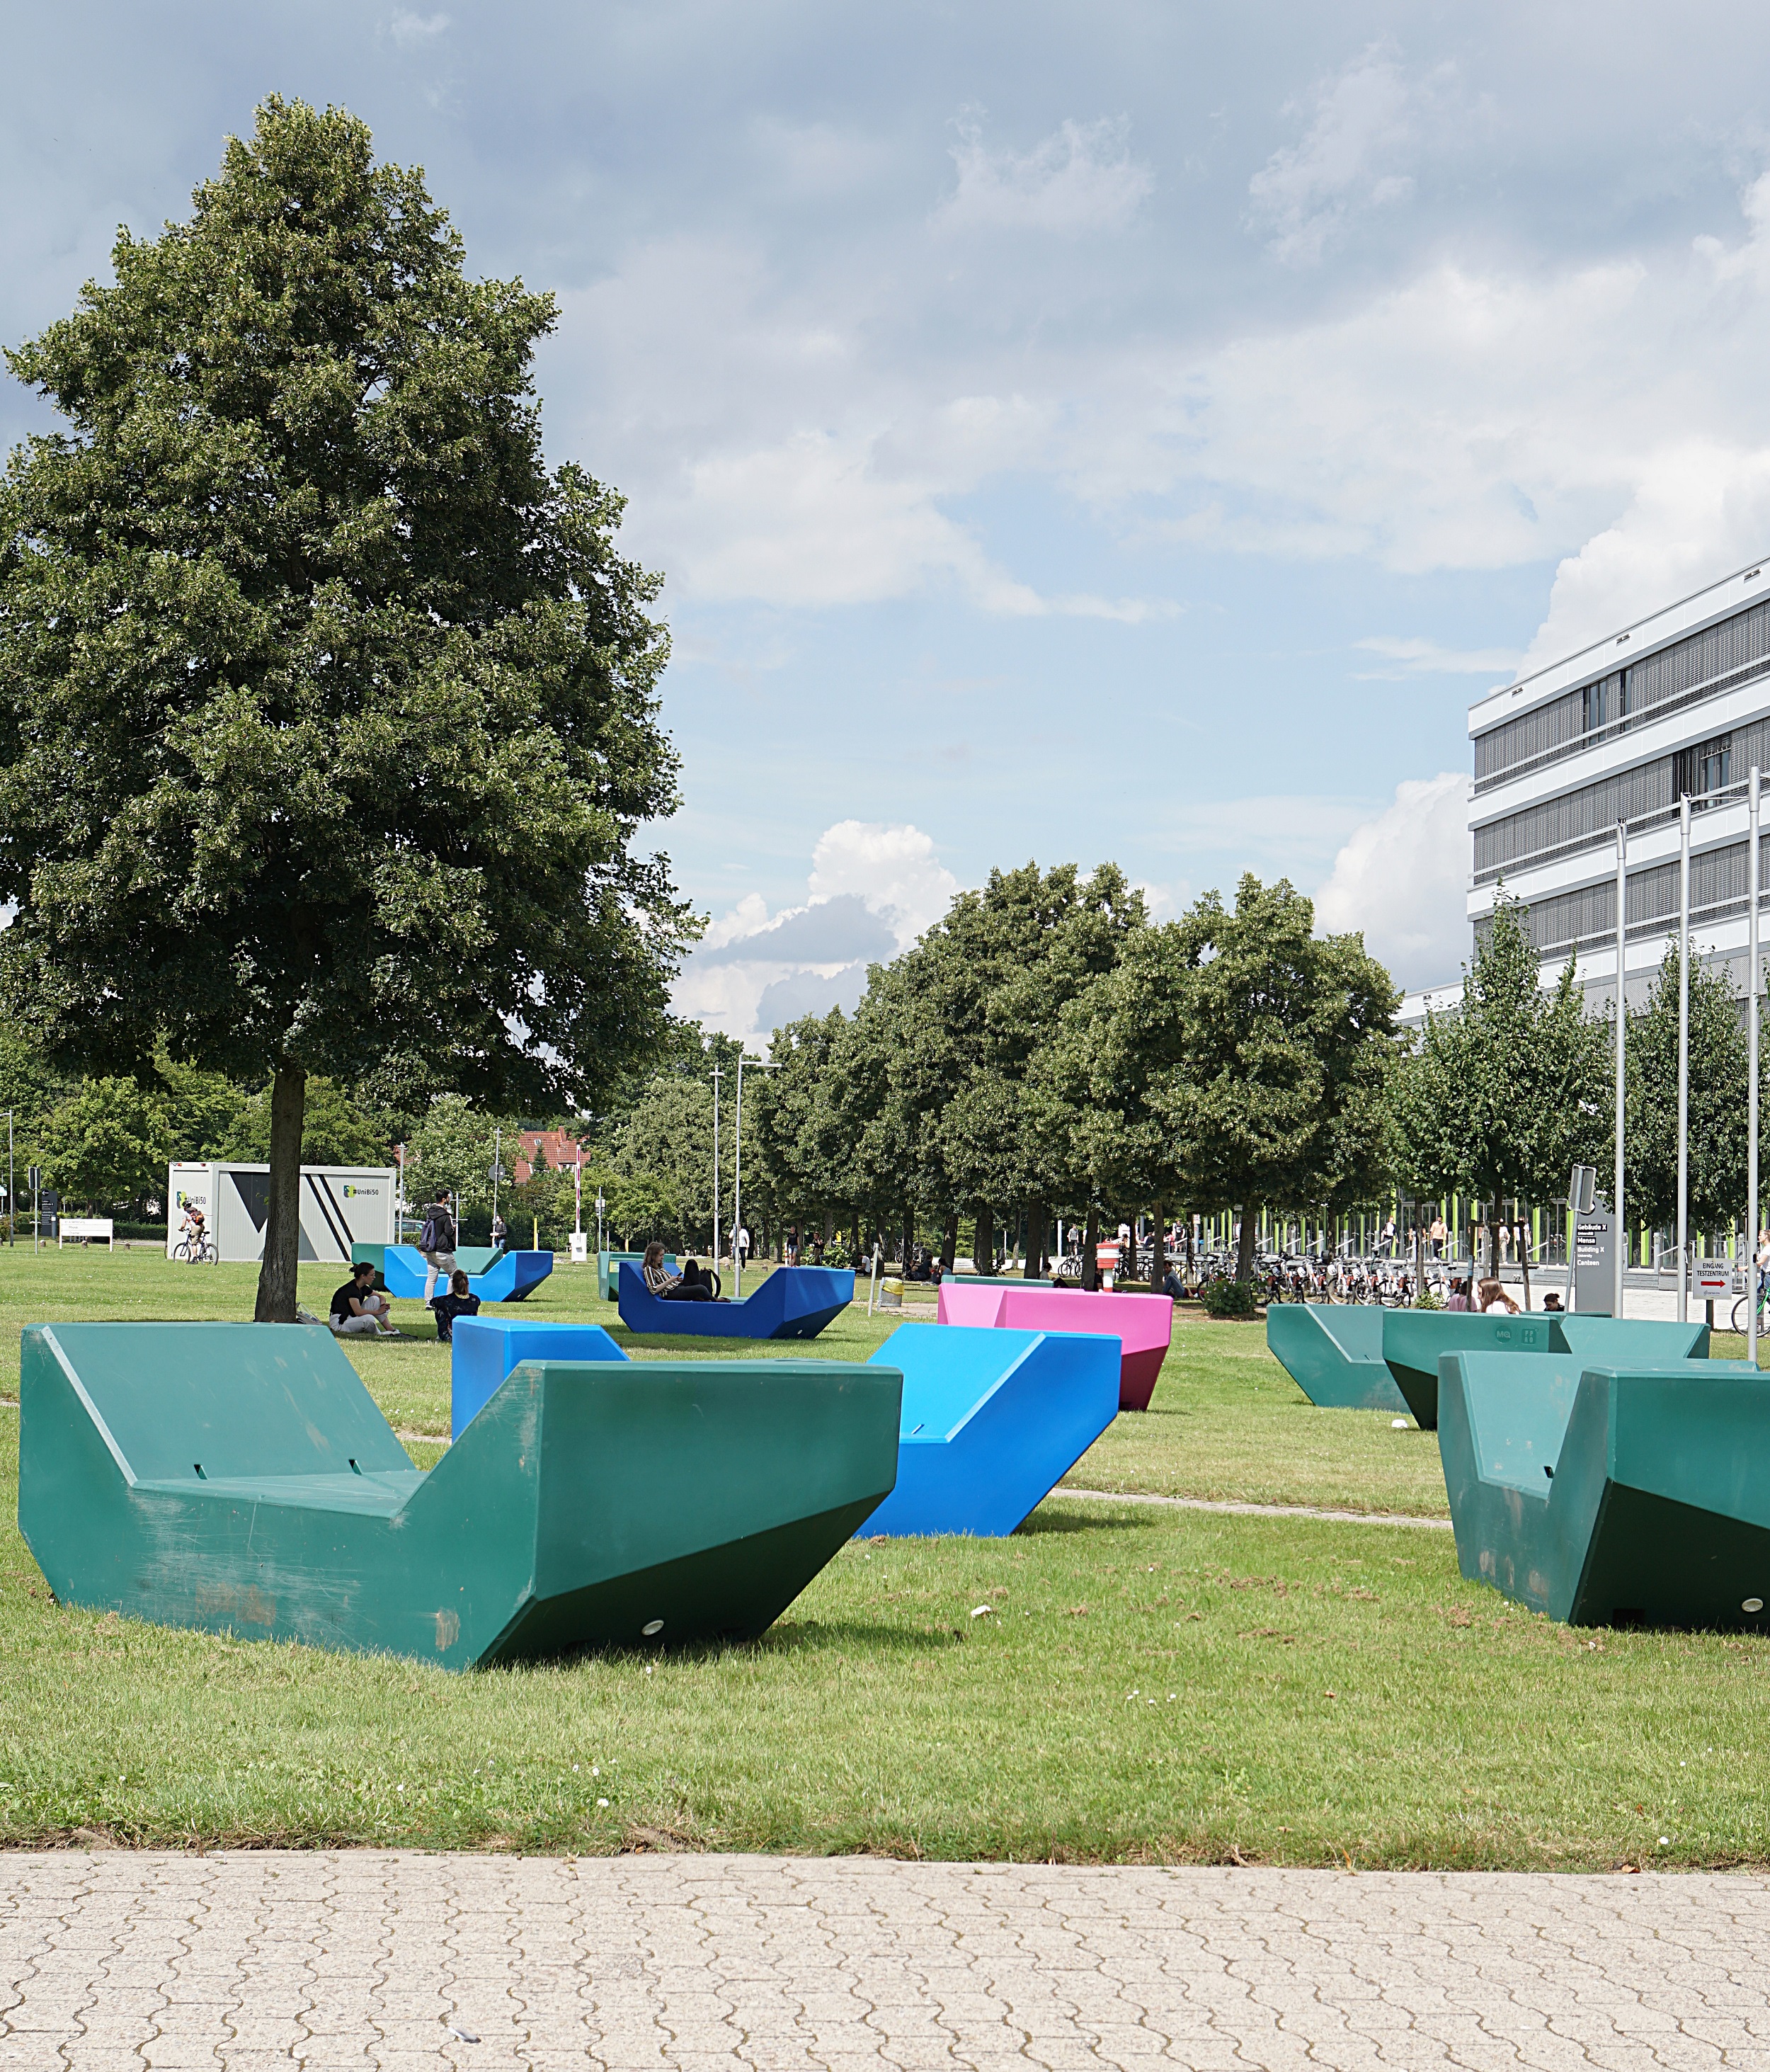 Bunte Enzis - Möbel aus Kunststoff - laden auf dem Campus zum Verweilen ein